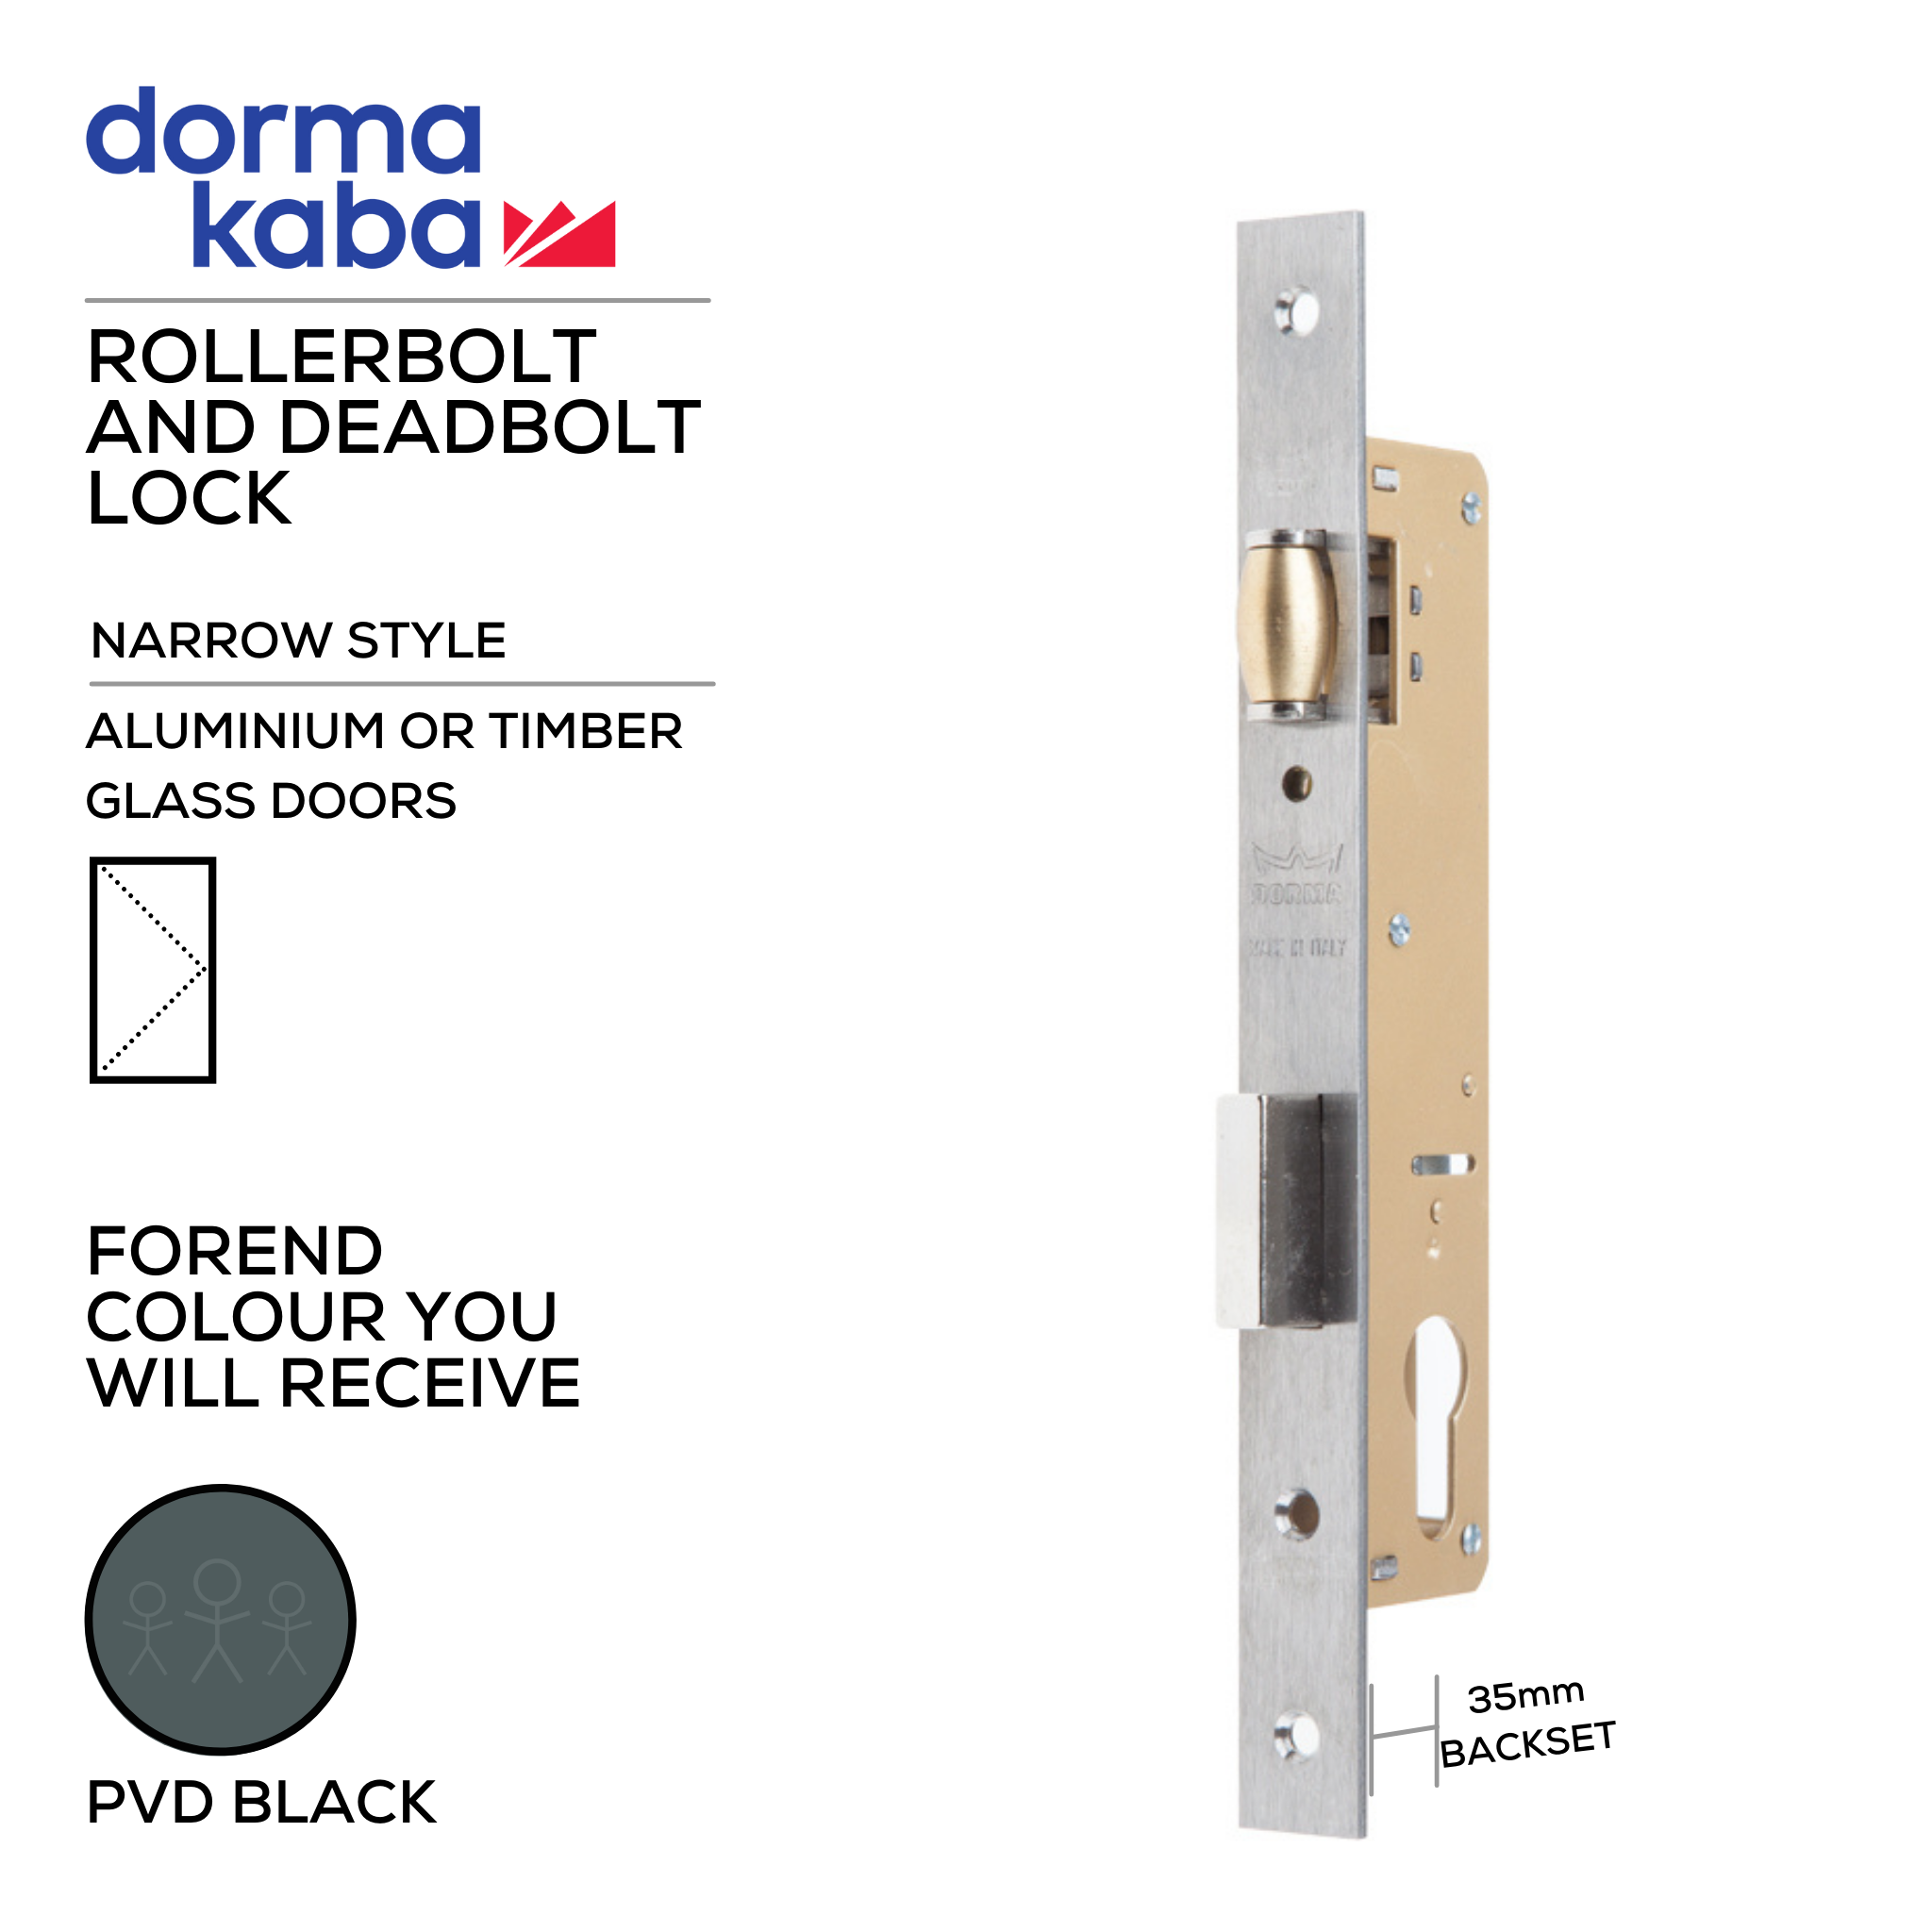 D02835 35mm - BLK, Narrow Style, Rollerbolt & Deadbolt Lock, Euro Cylinder, Excluding Cylinder, 35mm (Backset), PVD Black, DORMAKABA